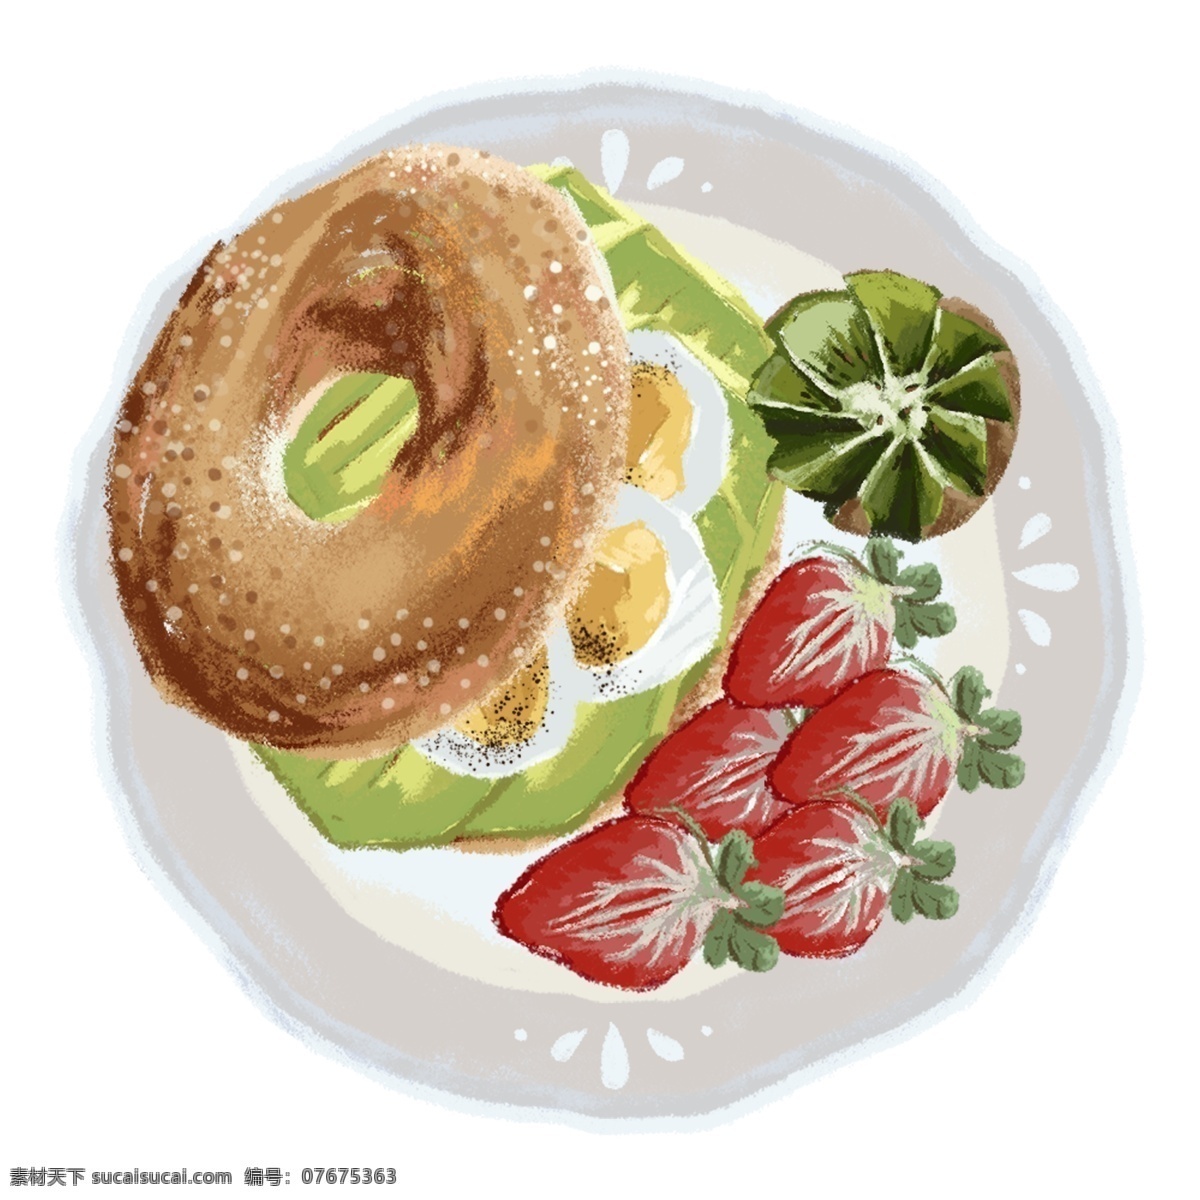 原创 手绘 元素 麦 饼 牛油果 猕猴桃 草莓 煮 蛋 早餐 麦饼 煮蛋 拼盘 装饰图案